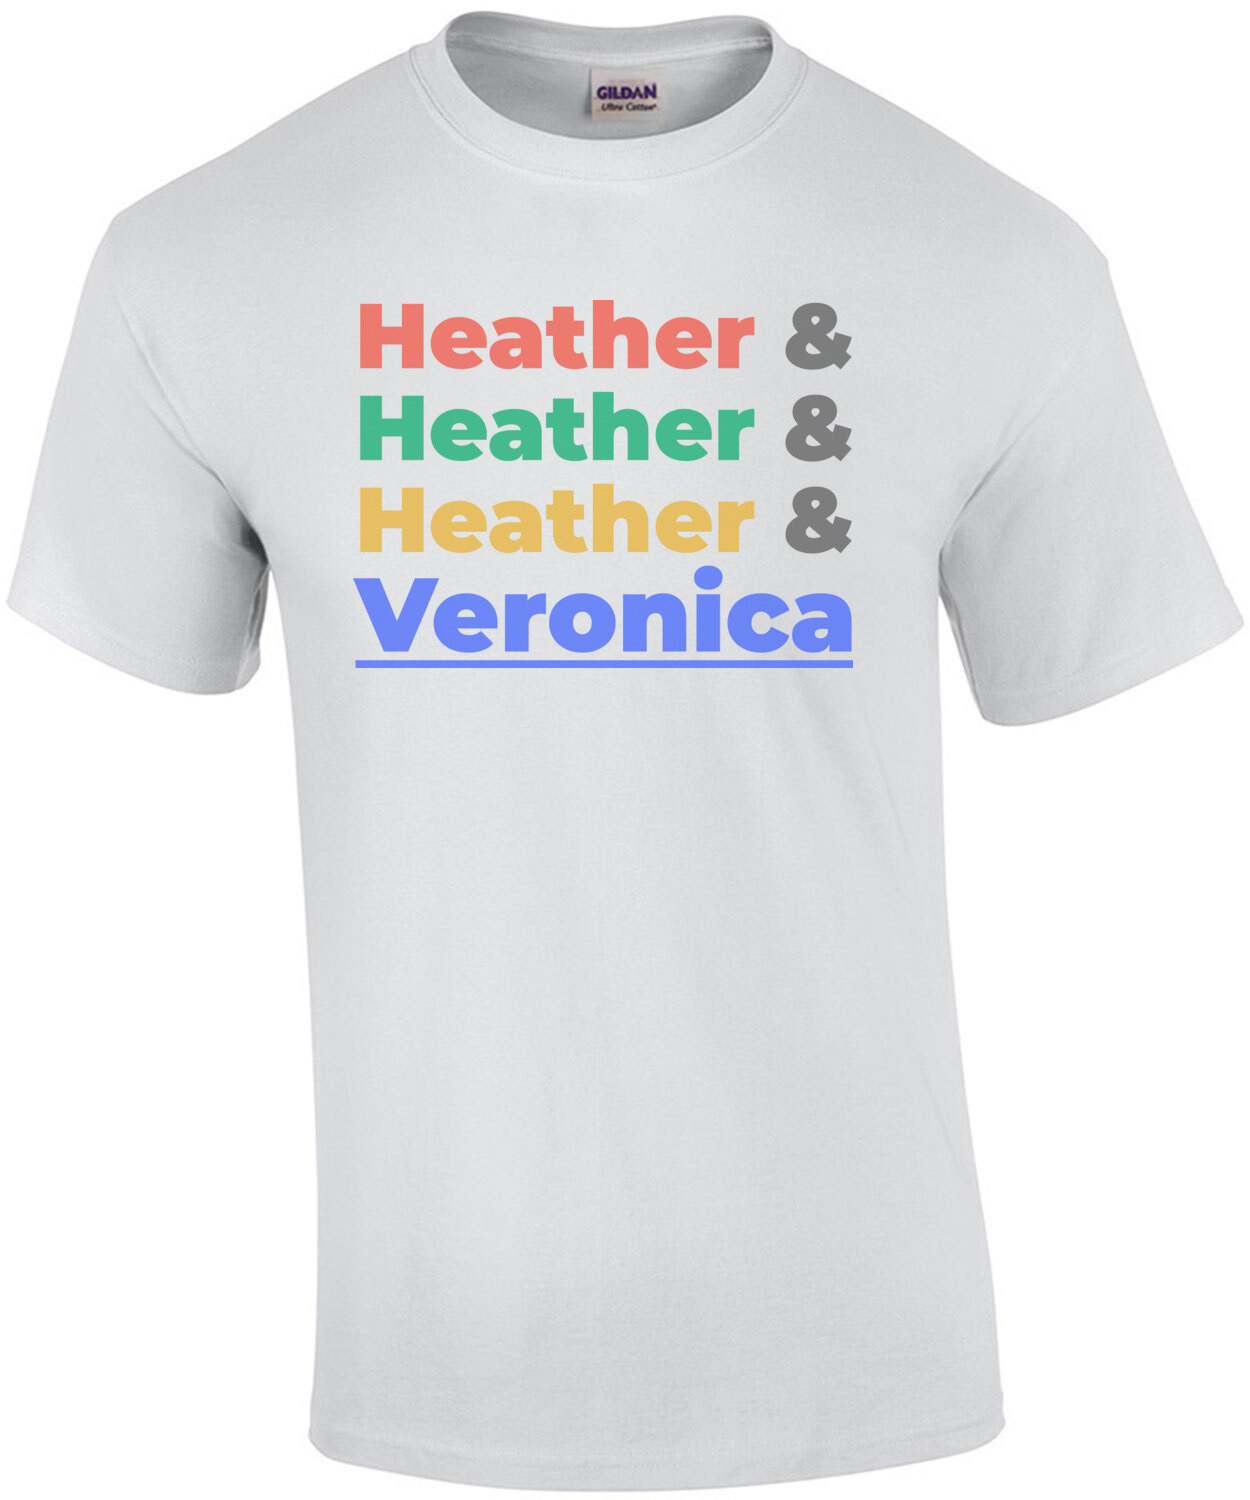 Heather & Heather & Heather & Veronica - Heathers 80's T-Shirt